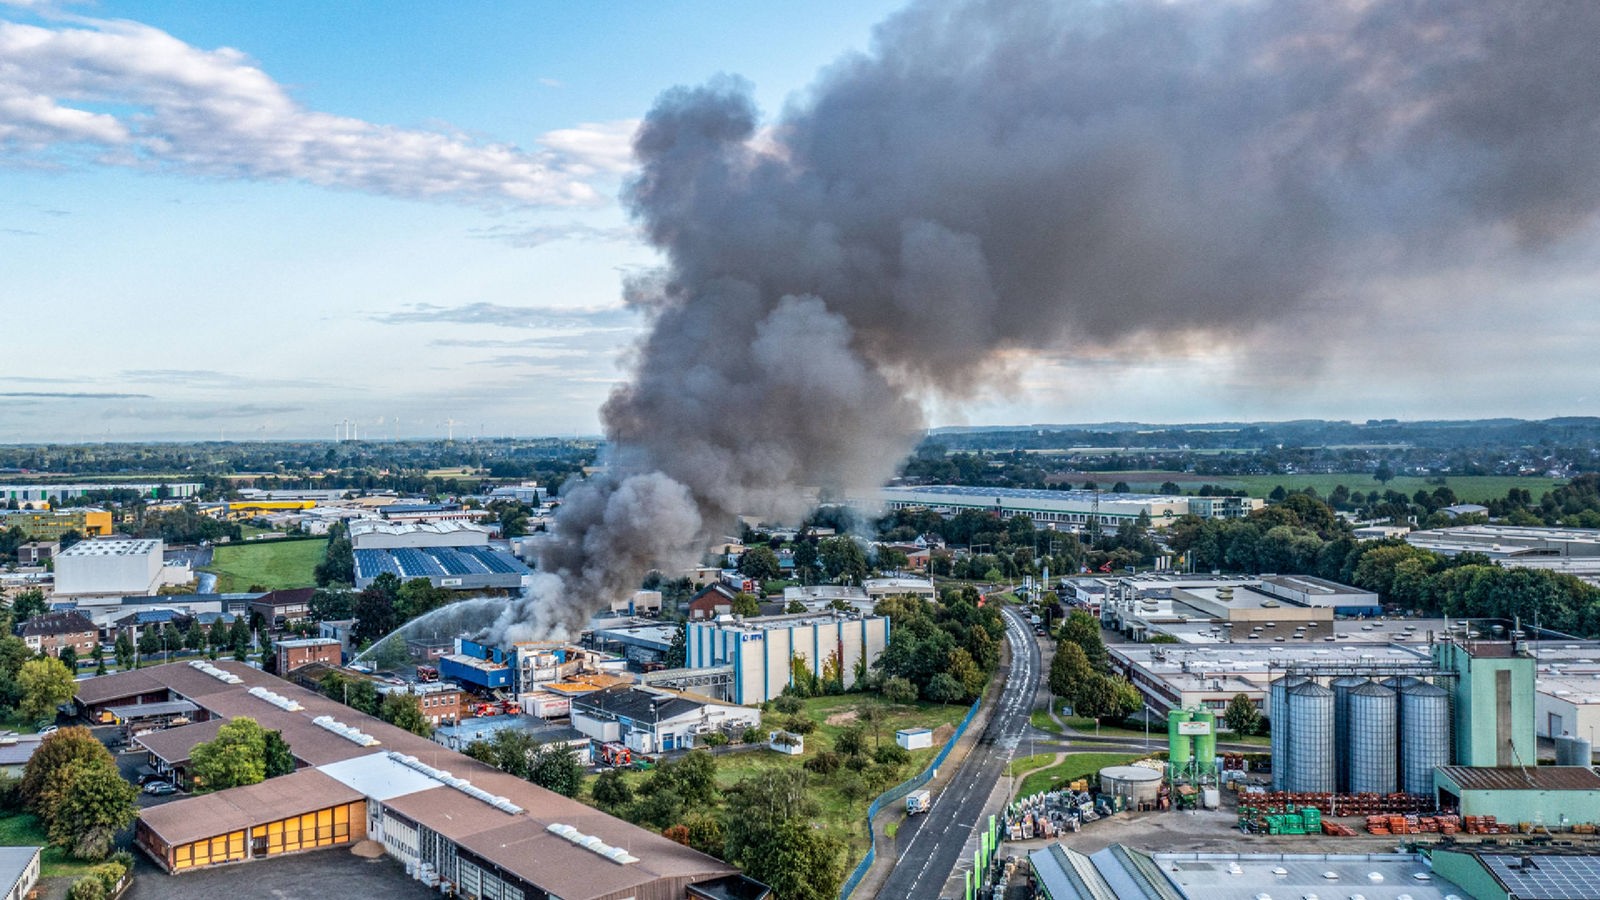 Zielone światło w Kempen: ugaszony pożar w fabryce chemicznej – Aktualności – WDR – Aktualności